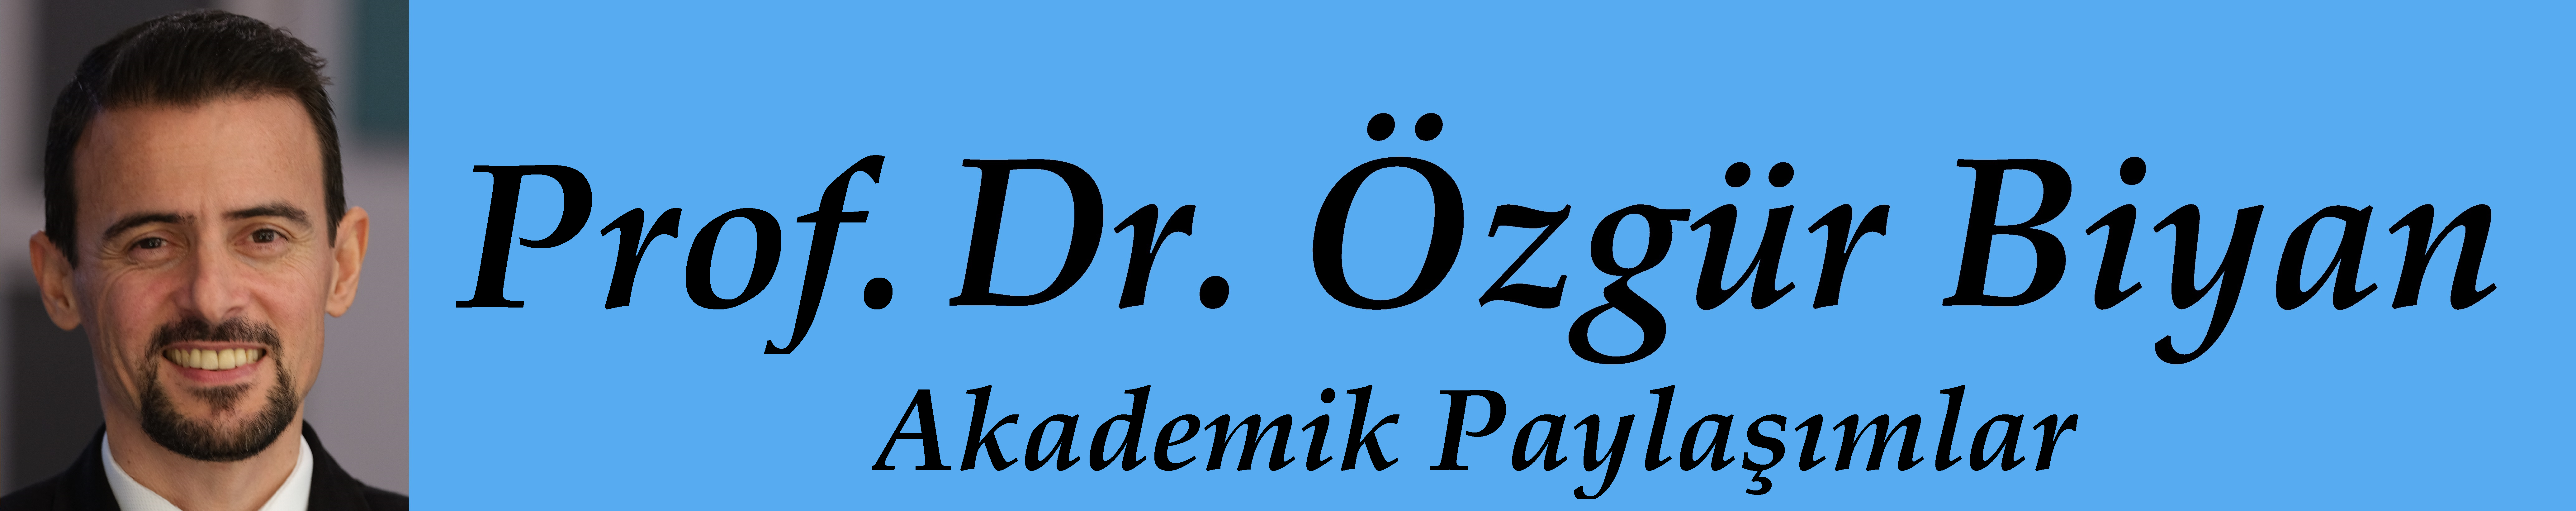 Prof. Dr. Özgür Biyan